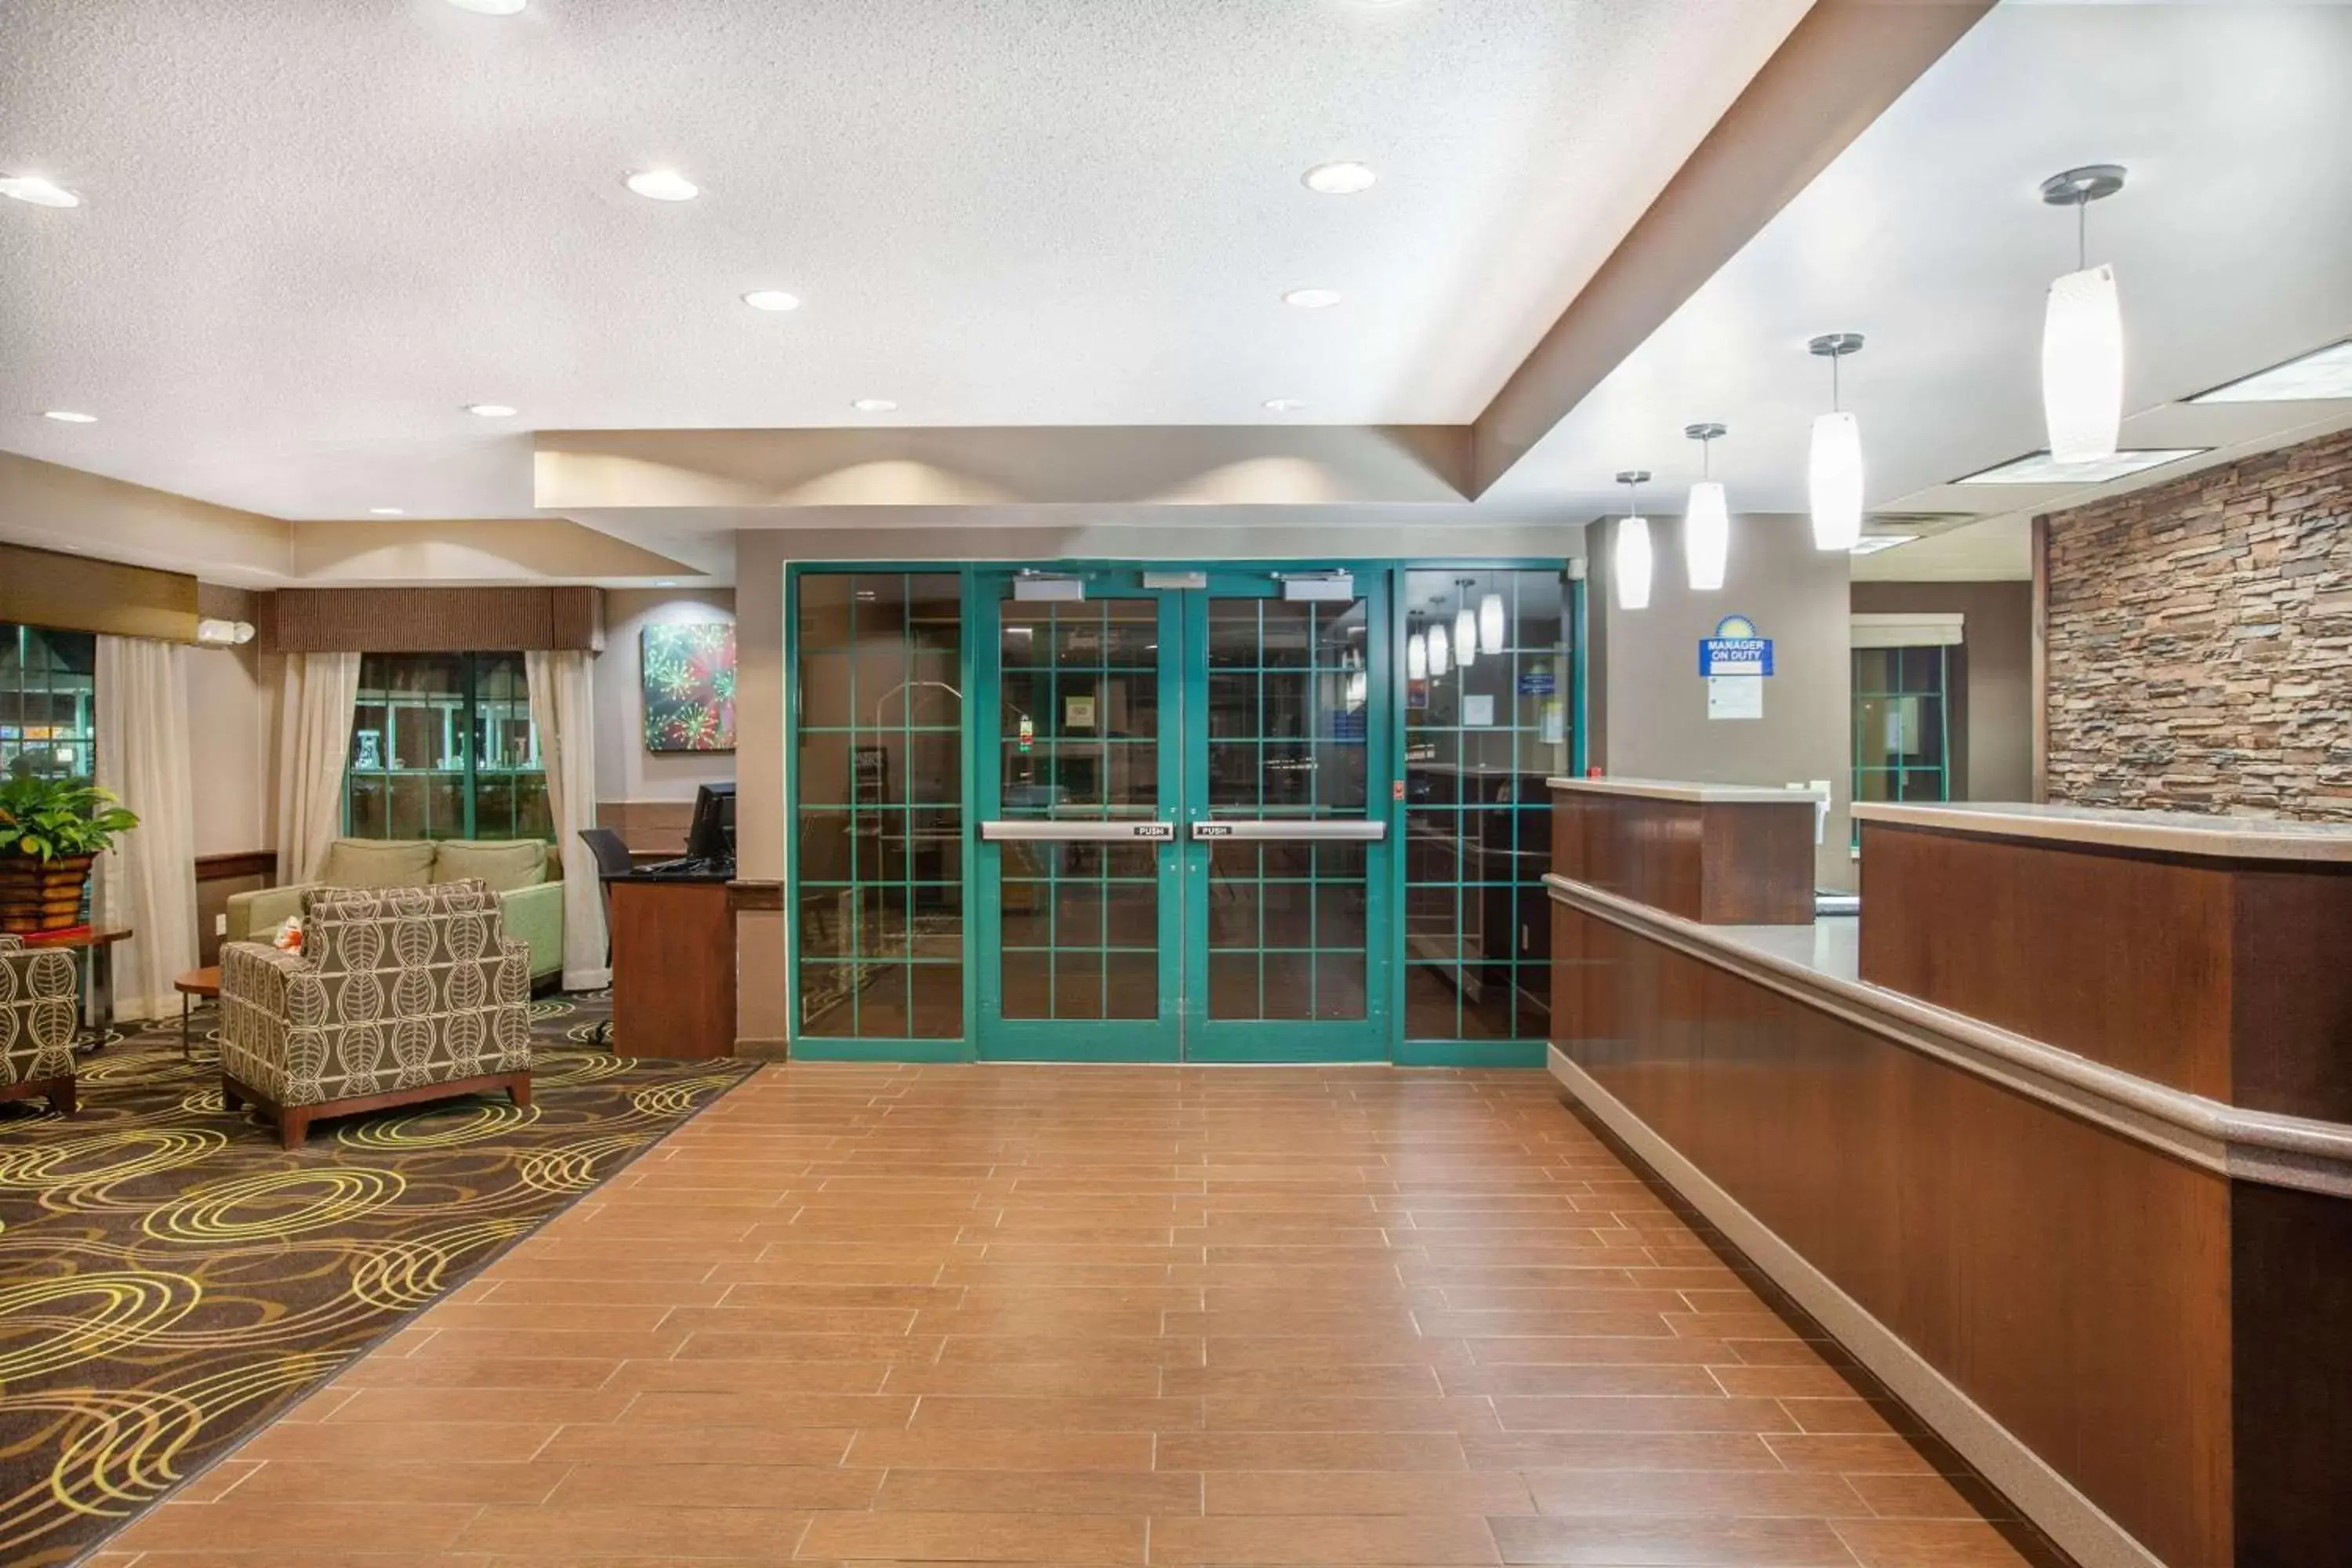 Lobby or reception, Lobby/Reception in Days Inn by Wyndham Brewerton/ Syracuse near Oneida Lake